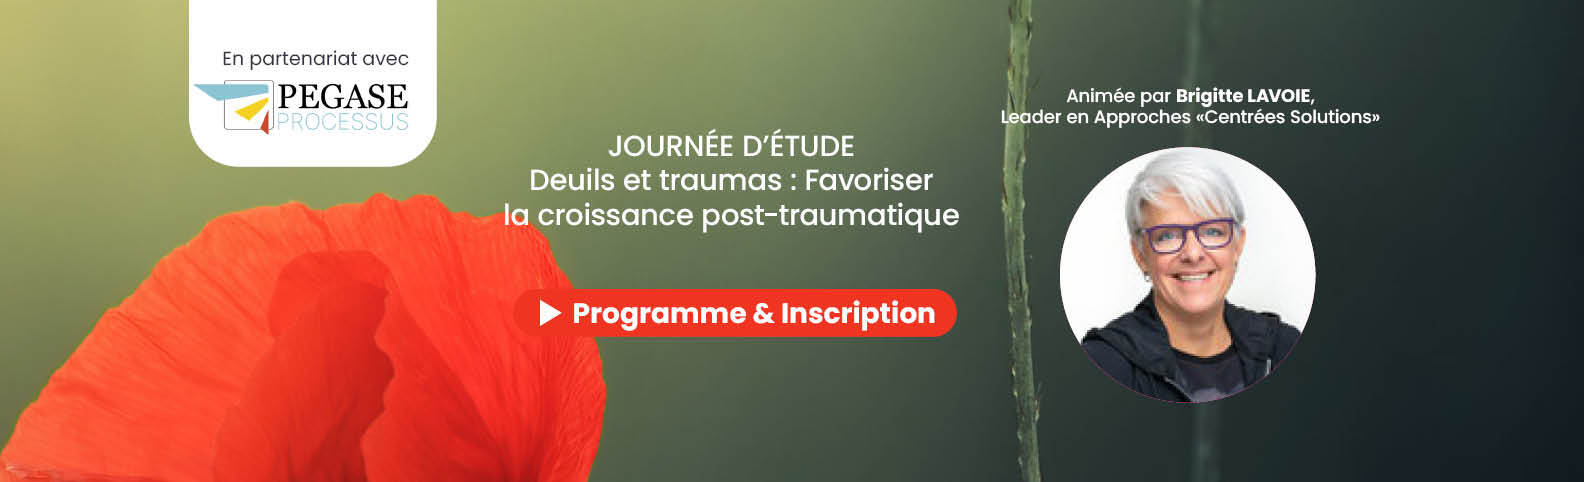 Journée d’étude avec Brigitte LAVOIE : Deuils et traumas : favoriser la croissance post-traumatique